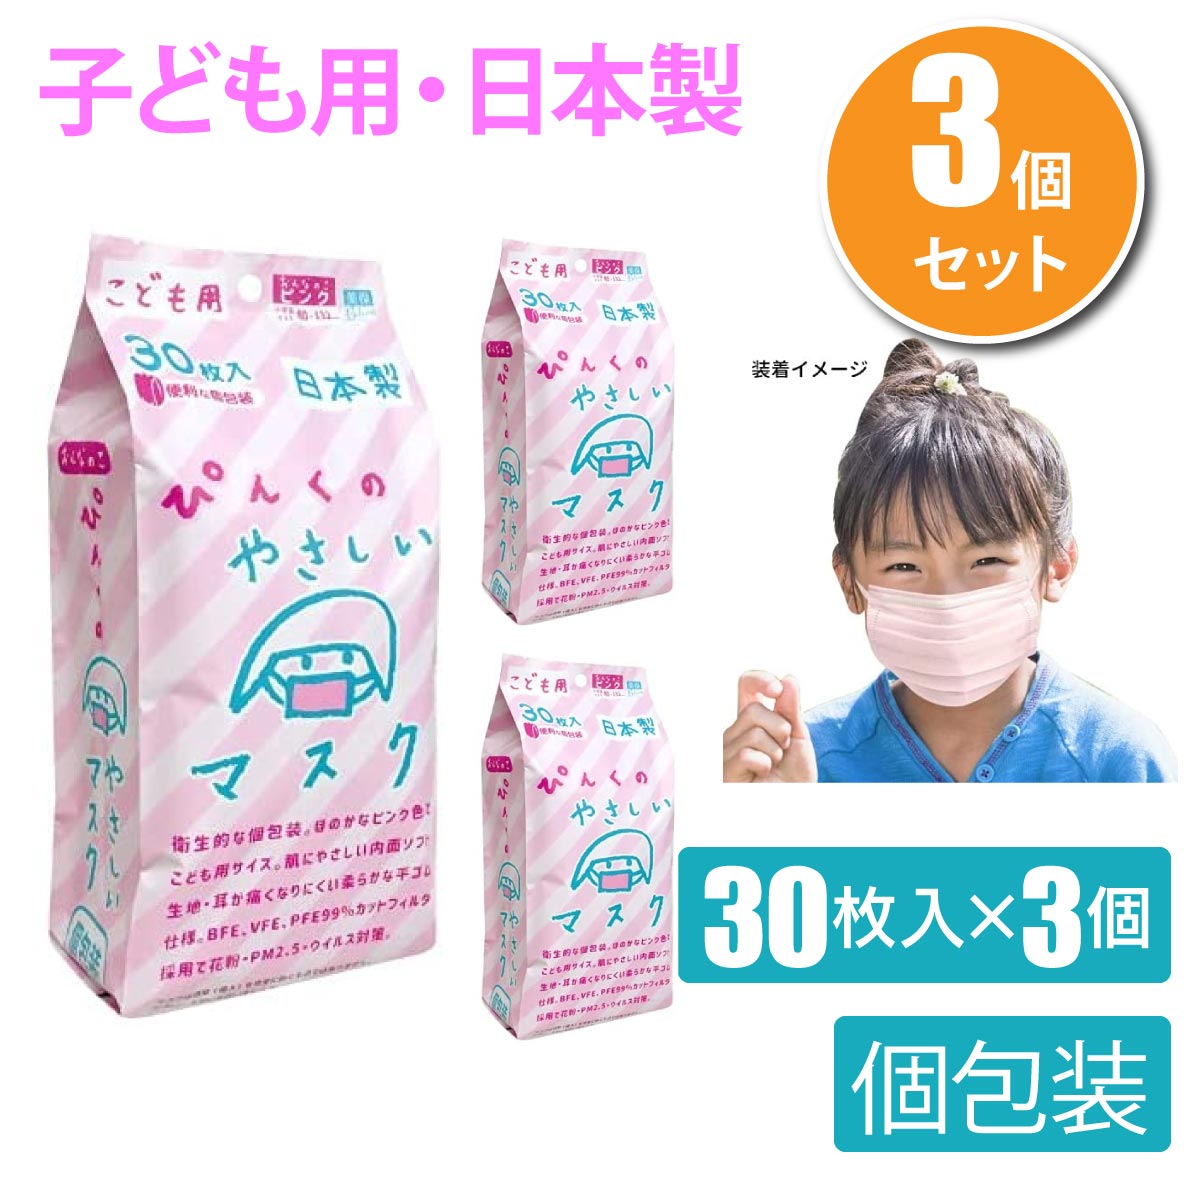 3個セット ビホウマスク 日本製 こども用ぴんくのやさしいマスク(個包装) 30枚入 不織布マスク ピンク 小学生 子供用 子ども用